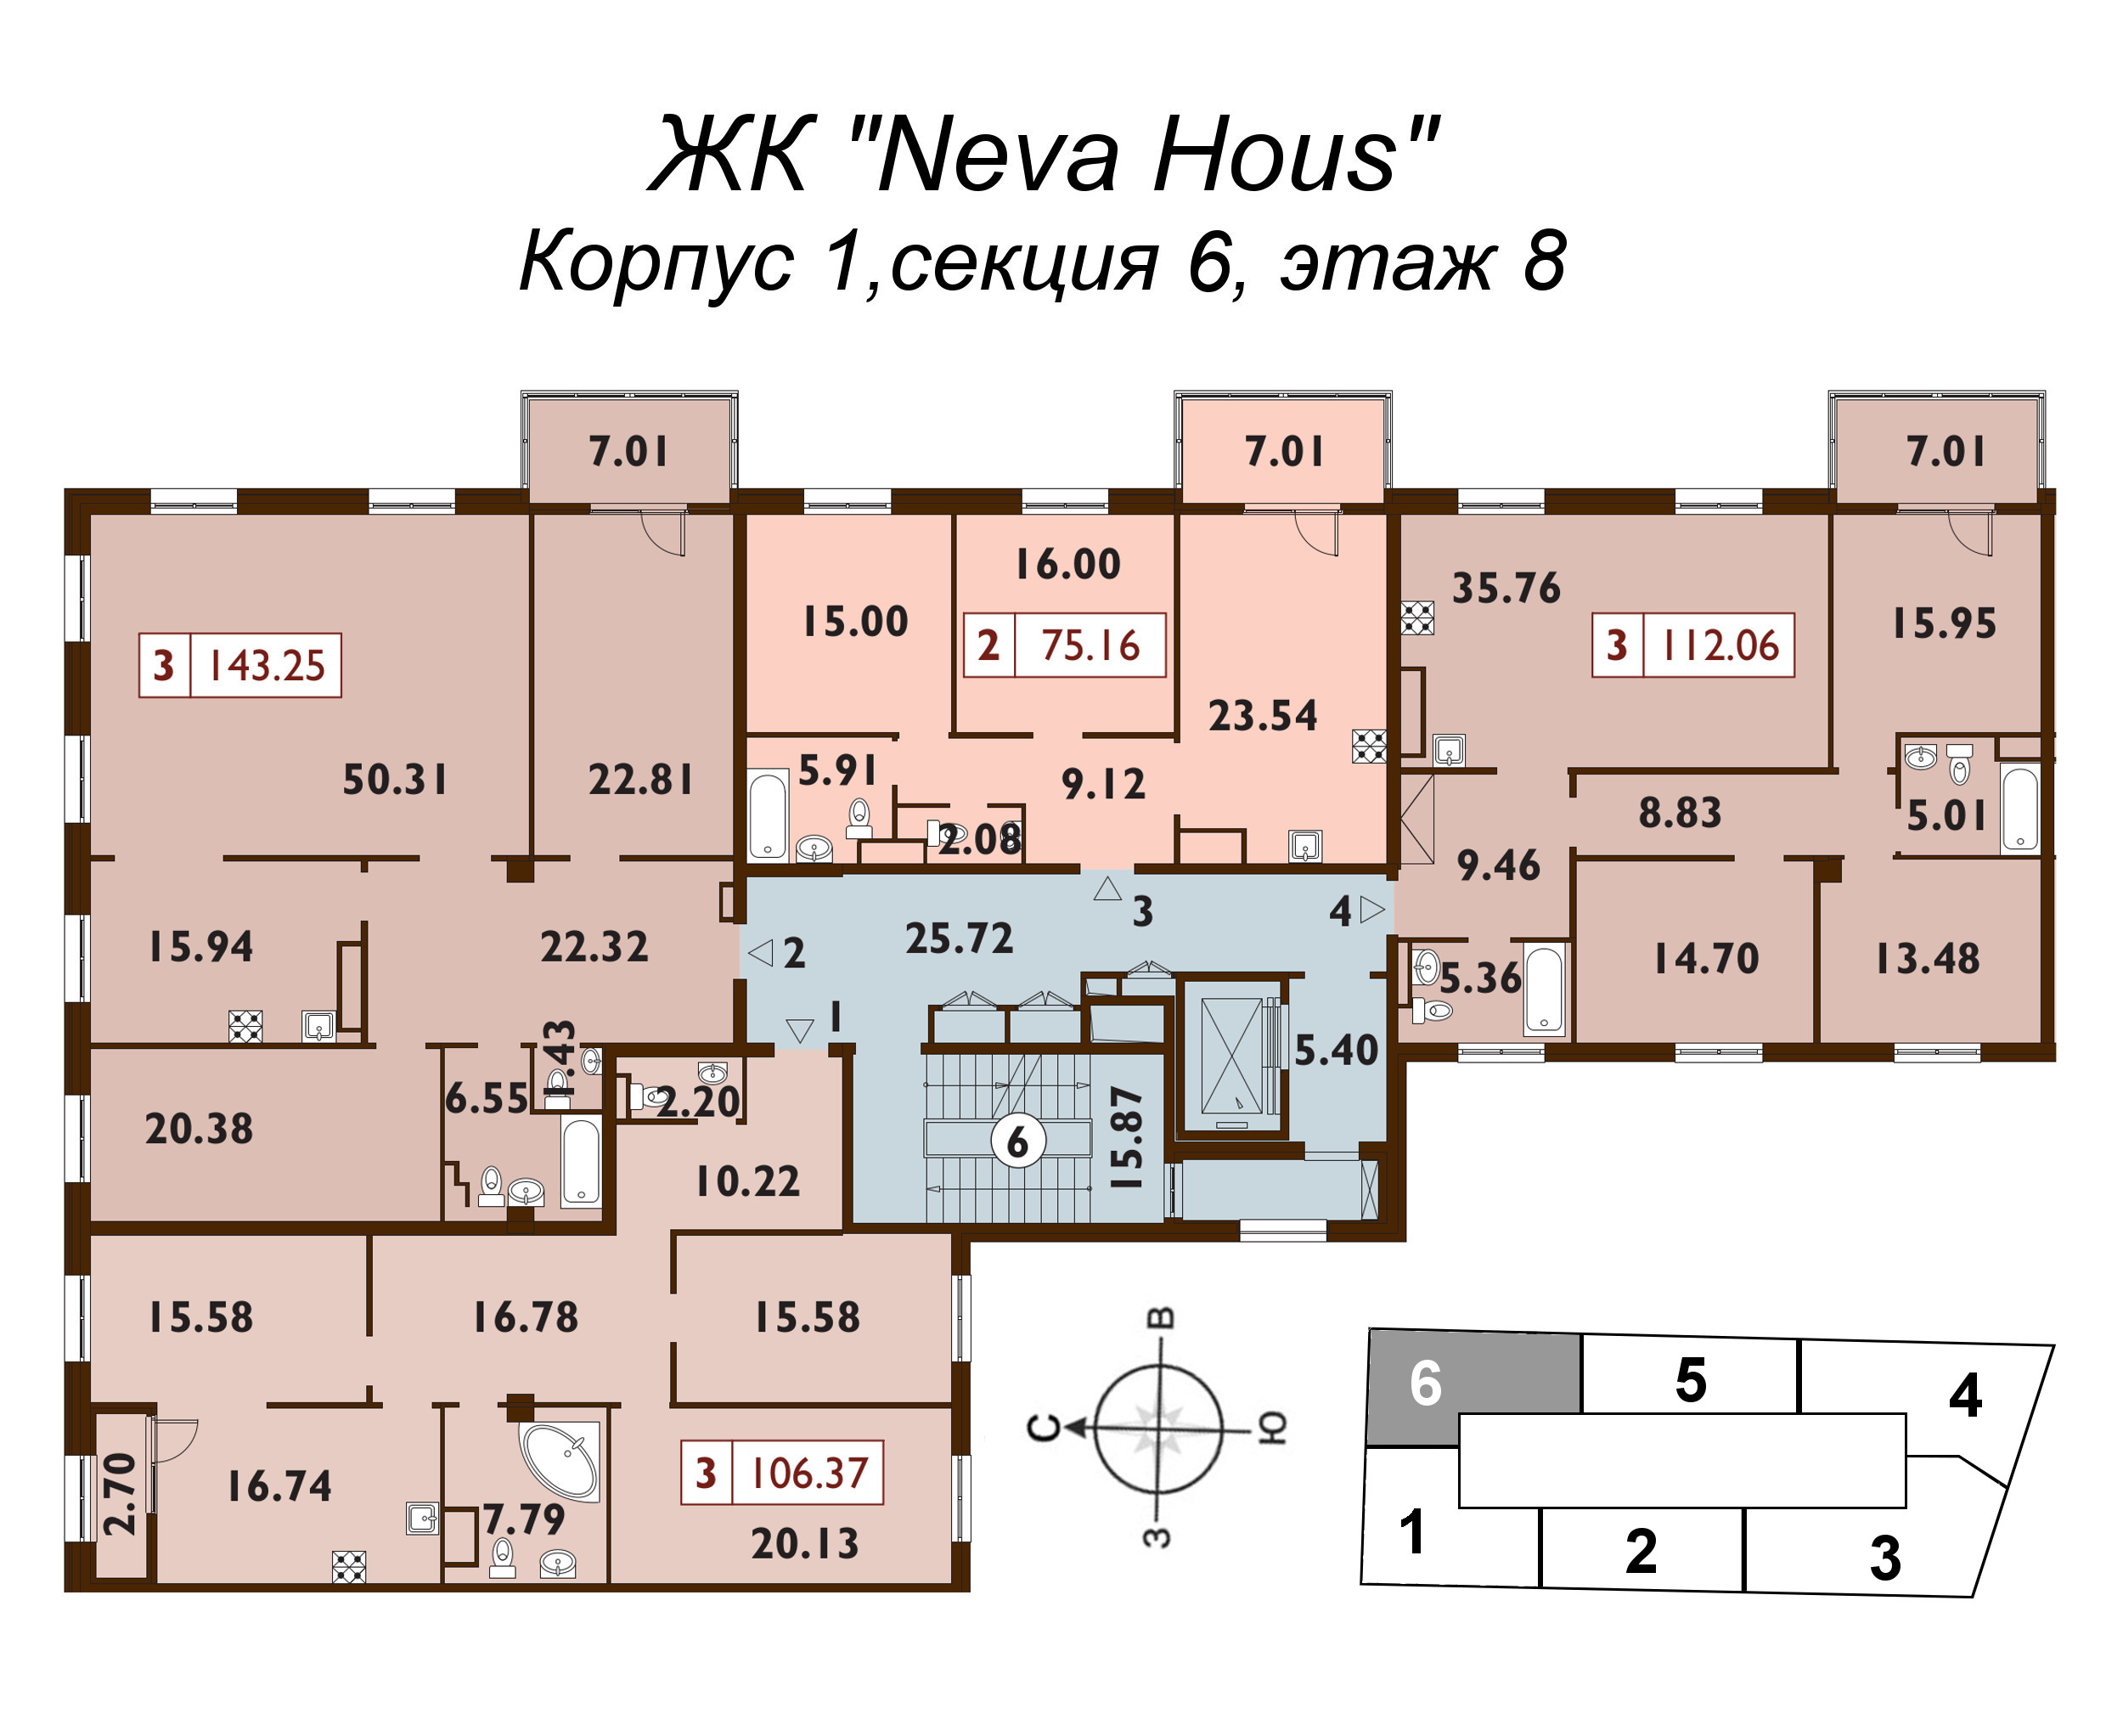 4-комнатная (Евро) квартира, 105.9 м² в ЖК "Neva Haus" - планировка этажа